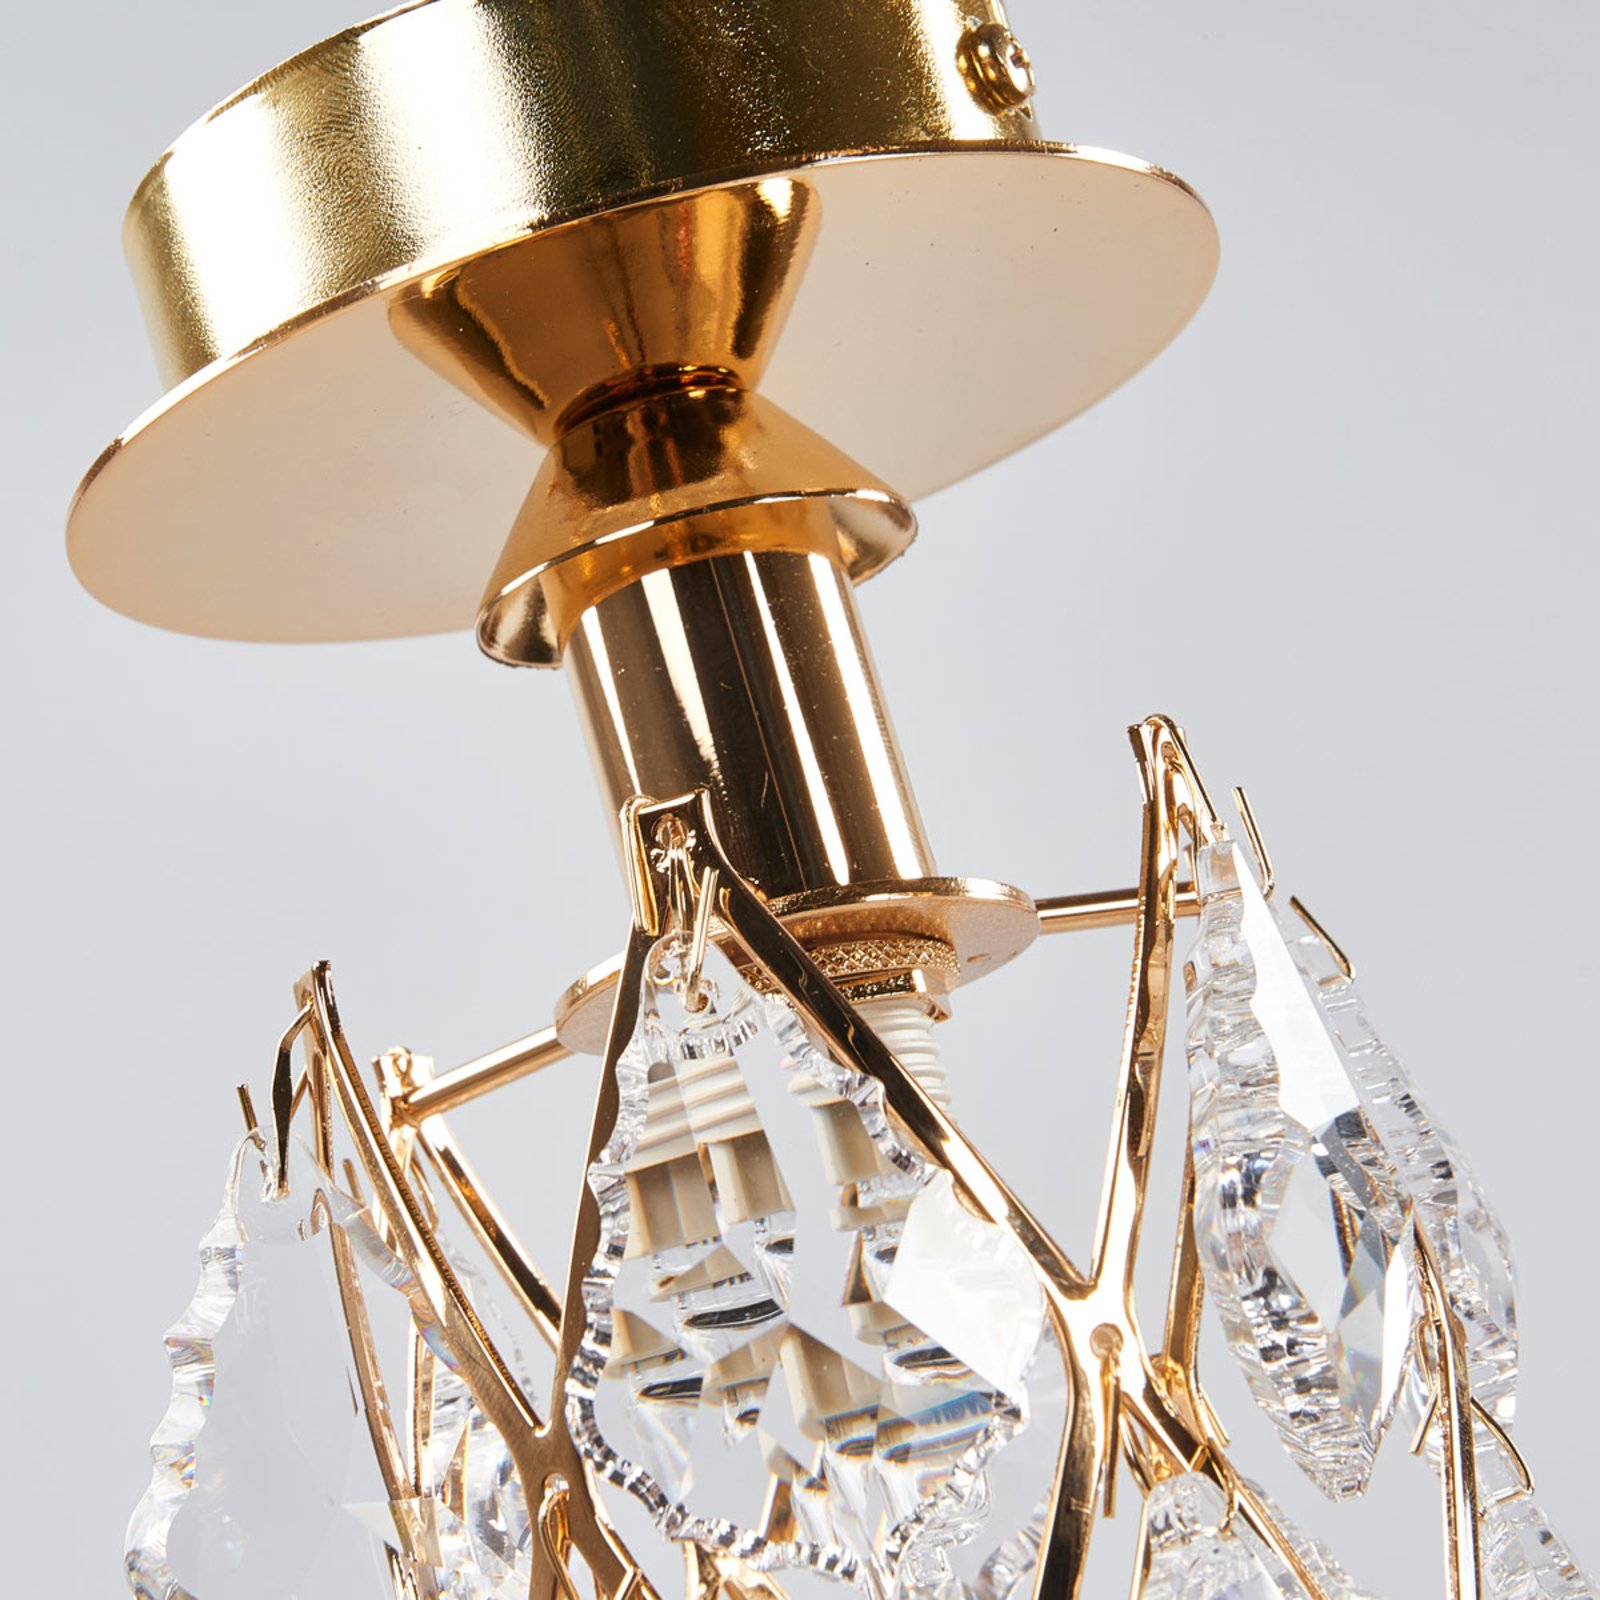 CHARLENE - pozłacana kryształowa lampa sufitowa